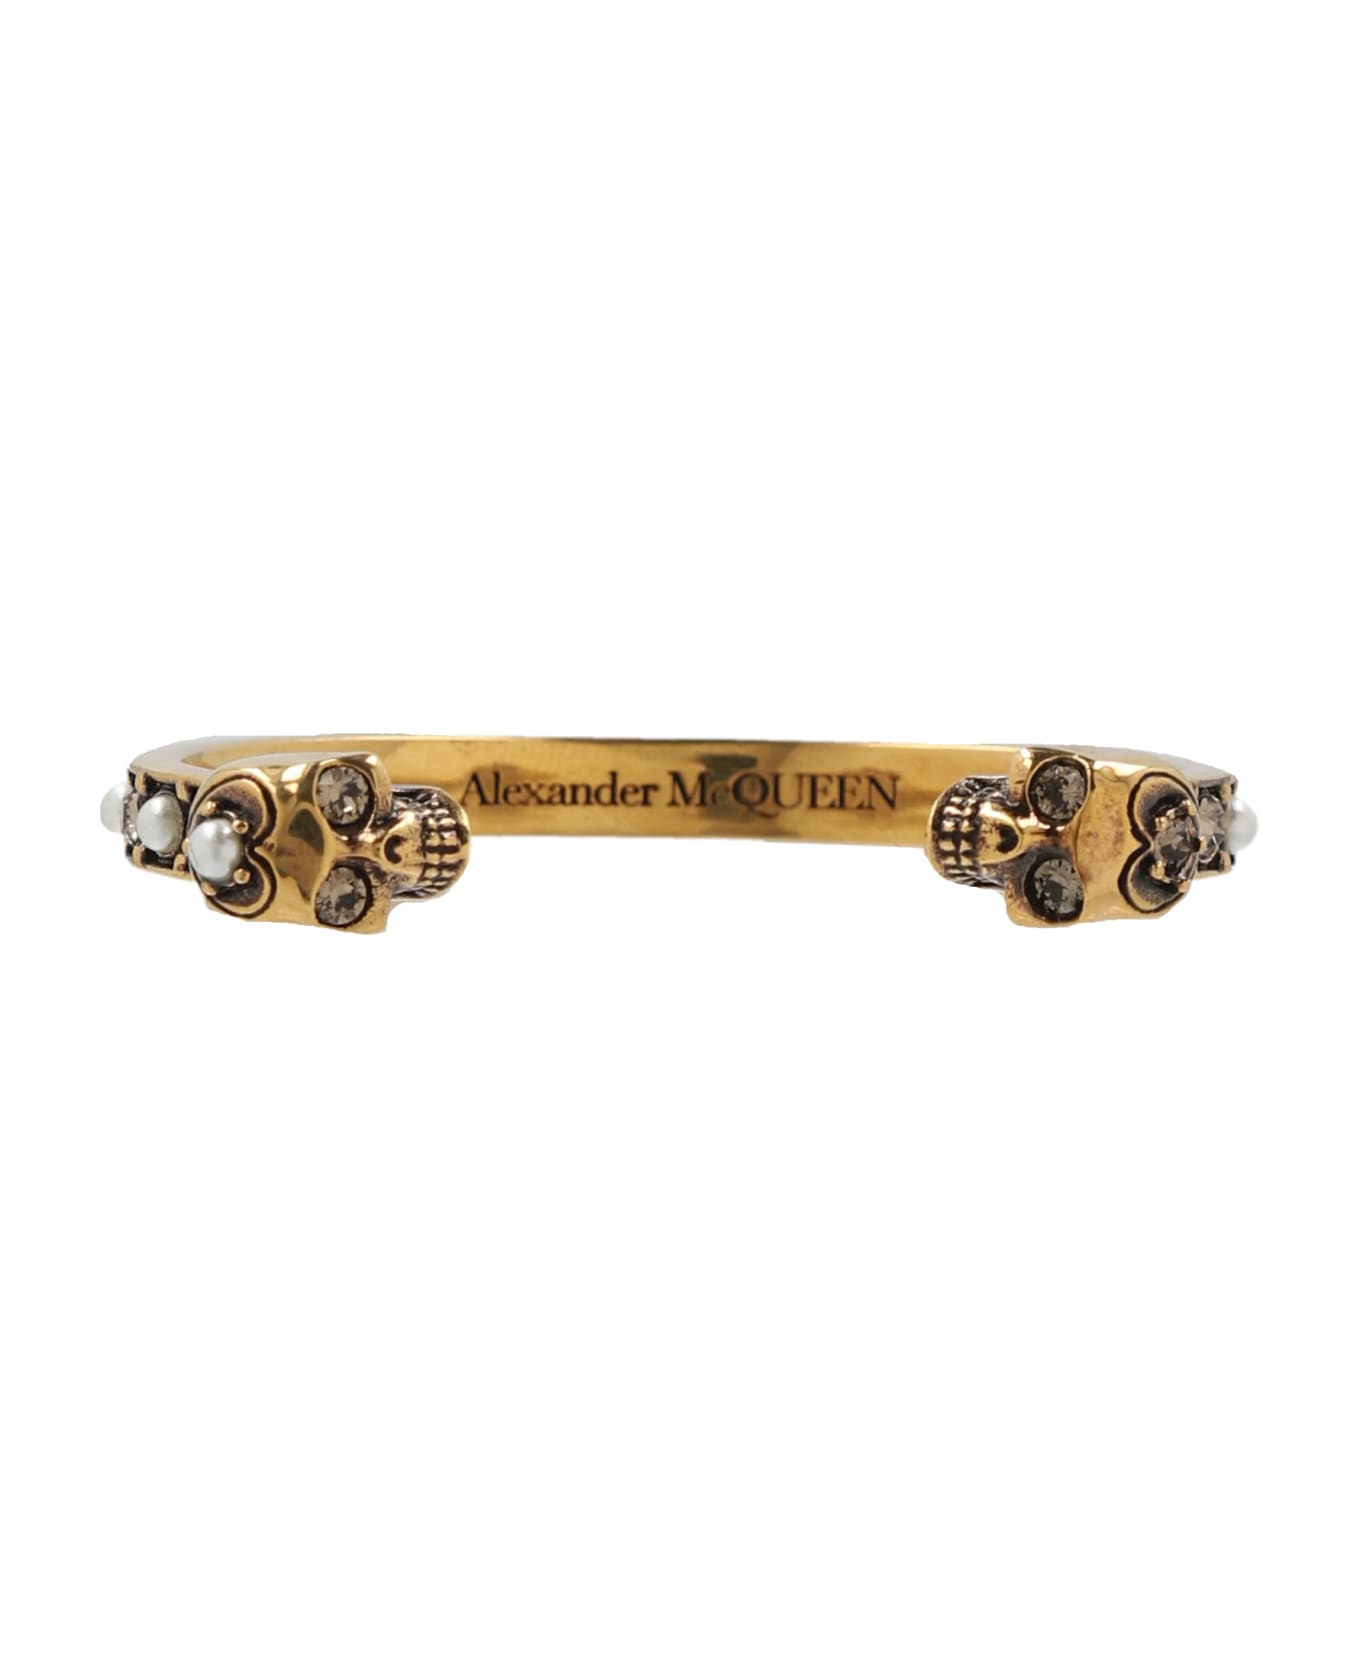 Alexander McQueen Metal Bracelet - Gold